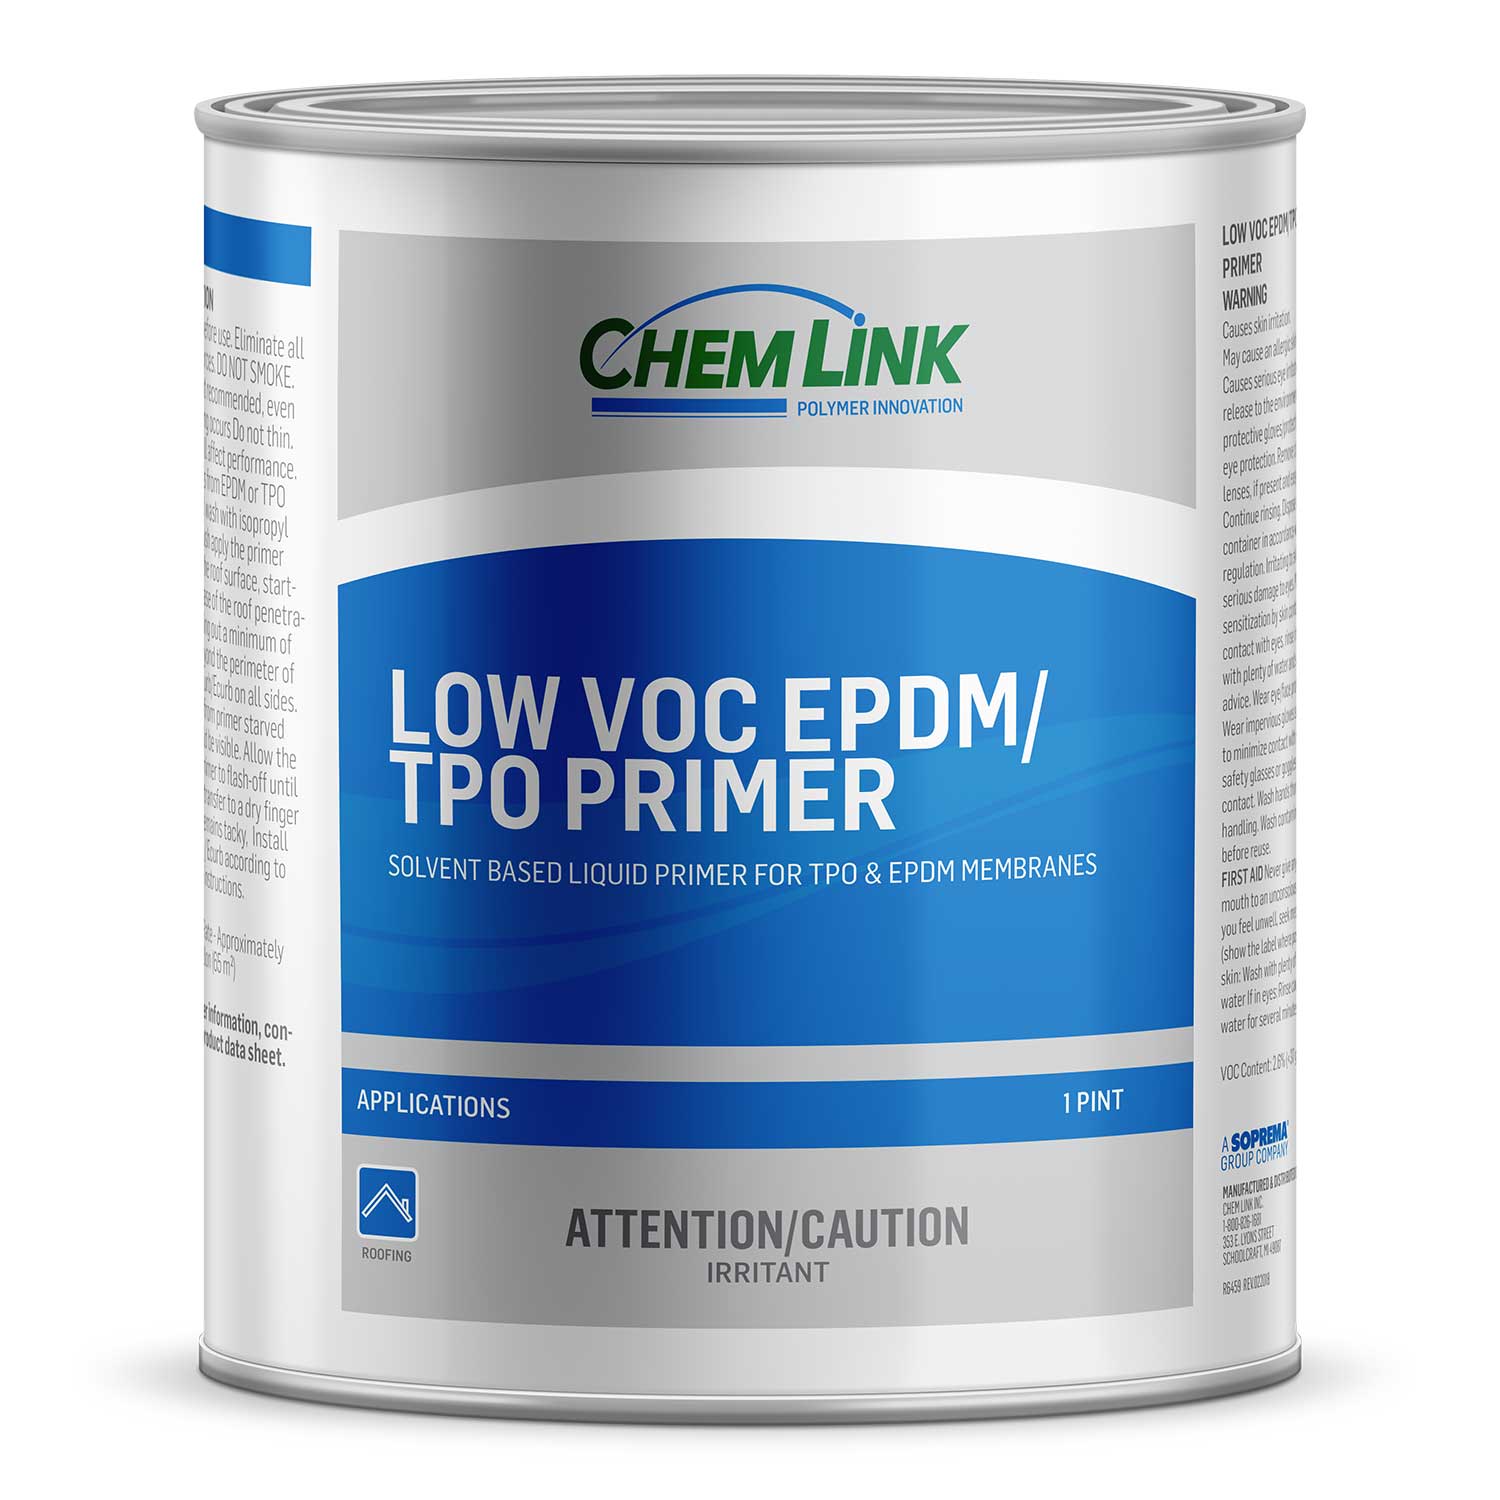 Low VOC EPDM/TPO Primer - Chem Link